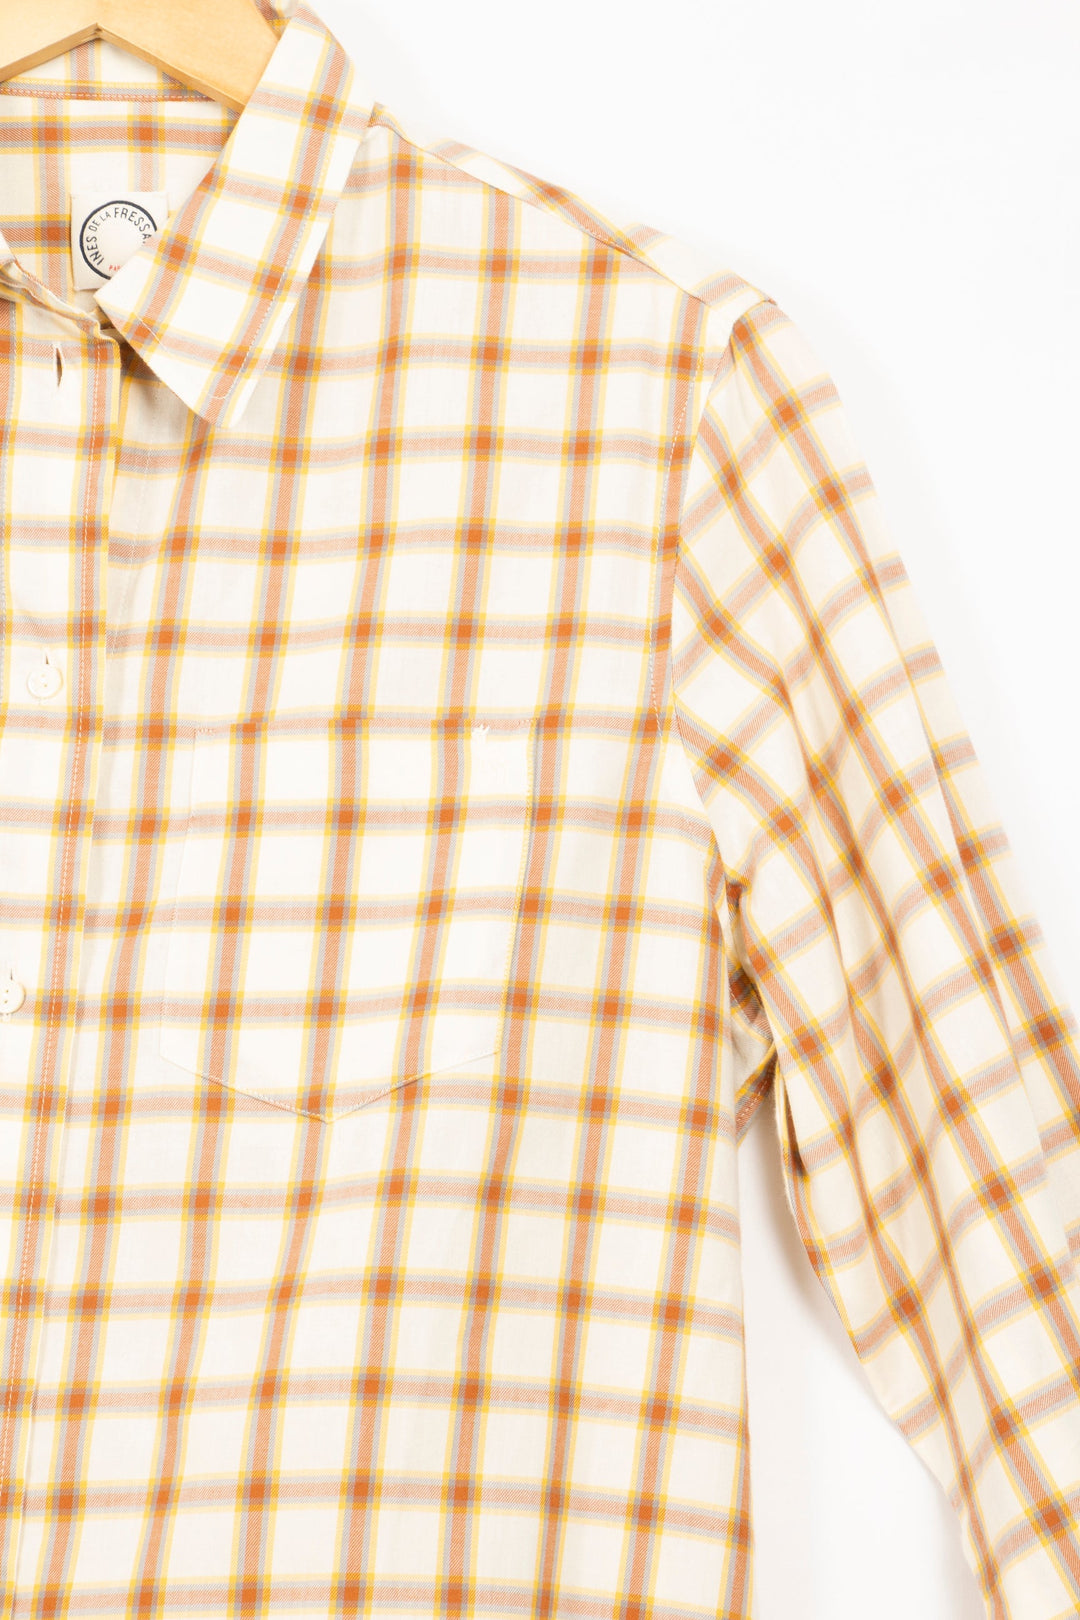 Chemise beige à carreaux marrons - 36